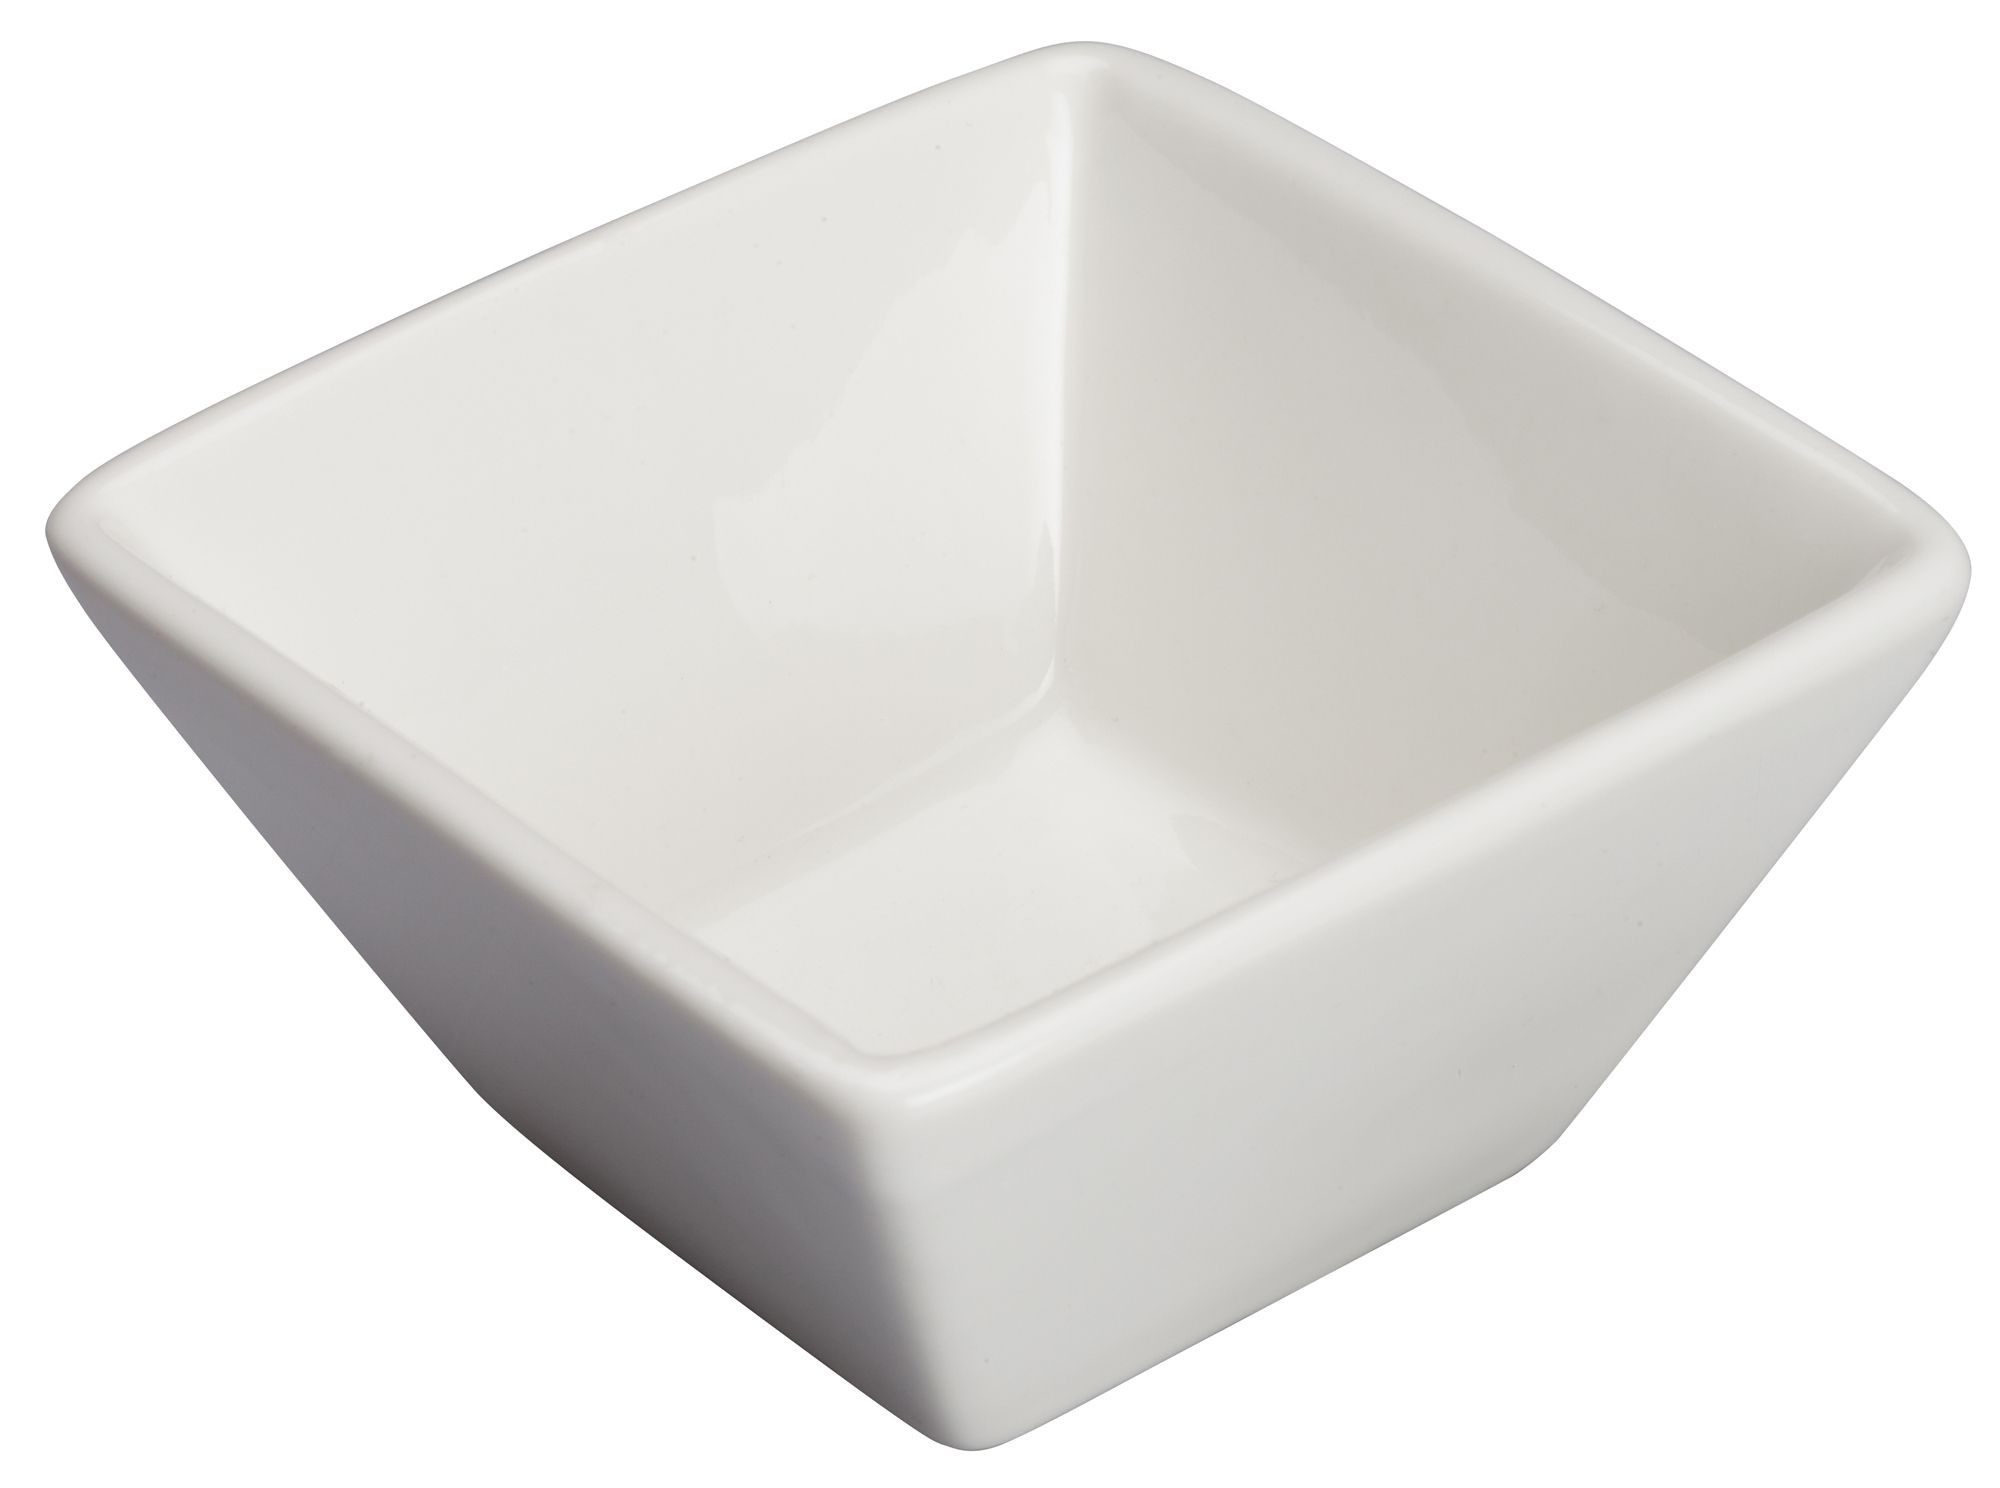 Winco WDP021-105 Mescalore Porcelain Bright White Square Mini Bowl 3-1/8"